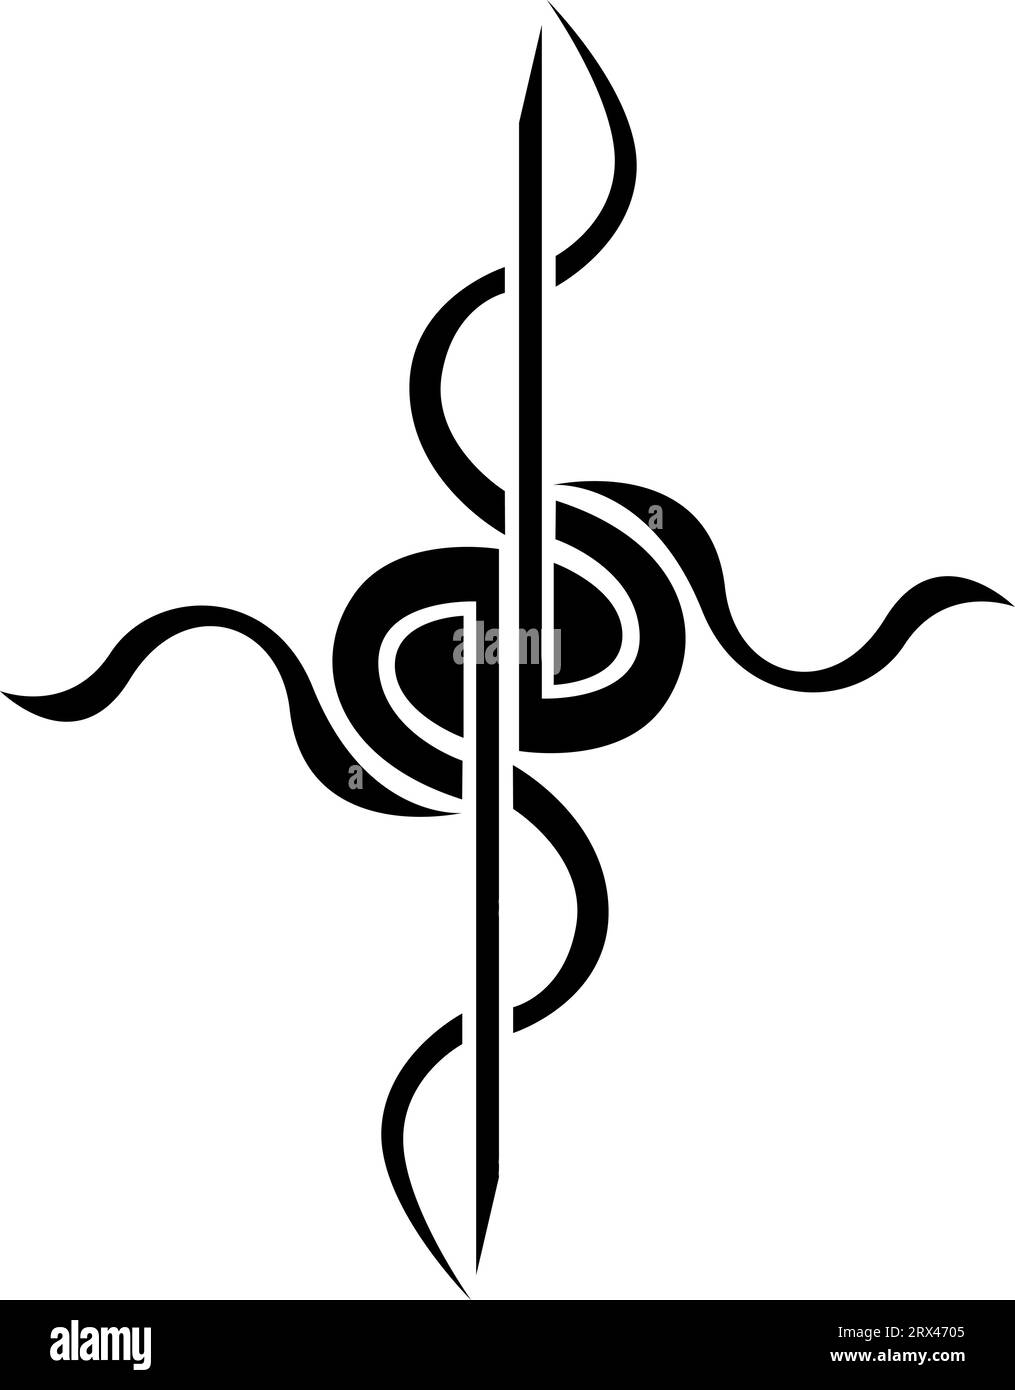 Tatouage croisé médical, illustration de tatouage, vecteur sur fond blanc. Illustration de Vecteur